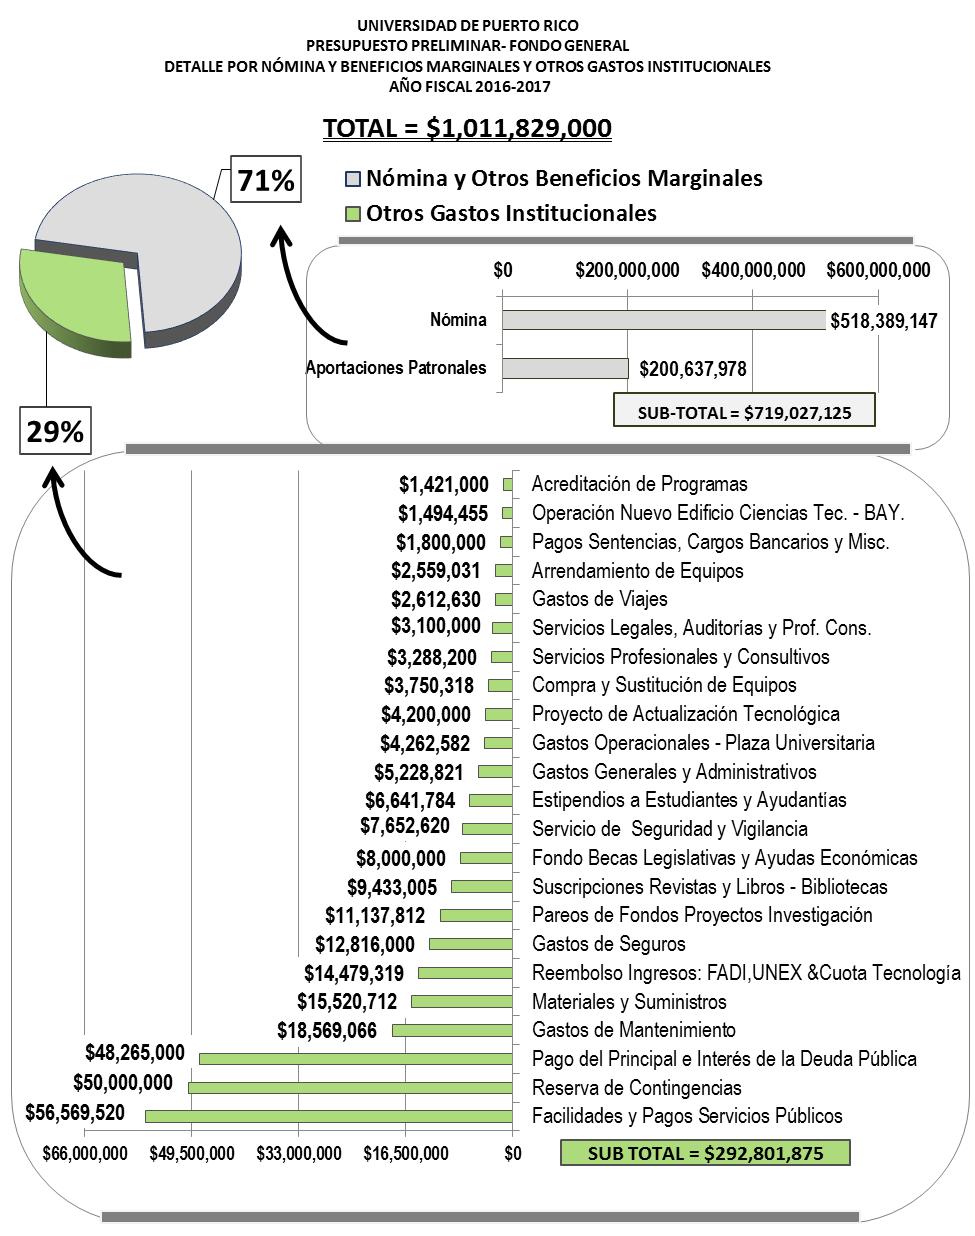 Gráfica Distribución Presupuesto Fondo General UPR AF